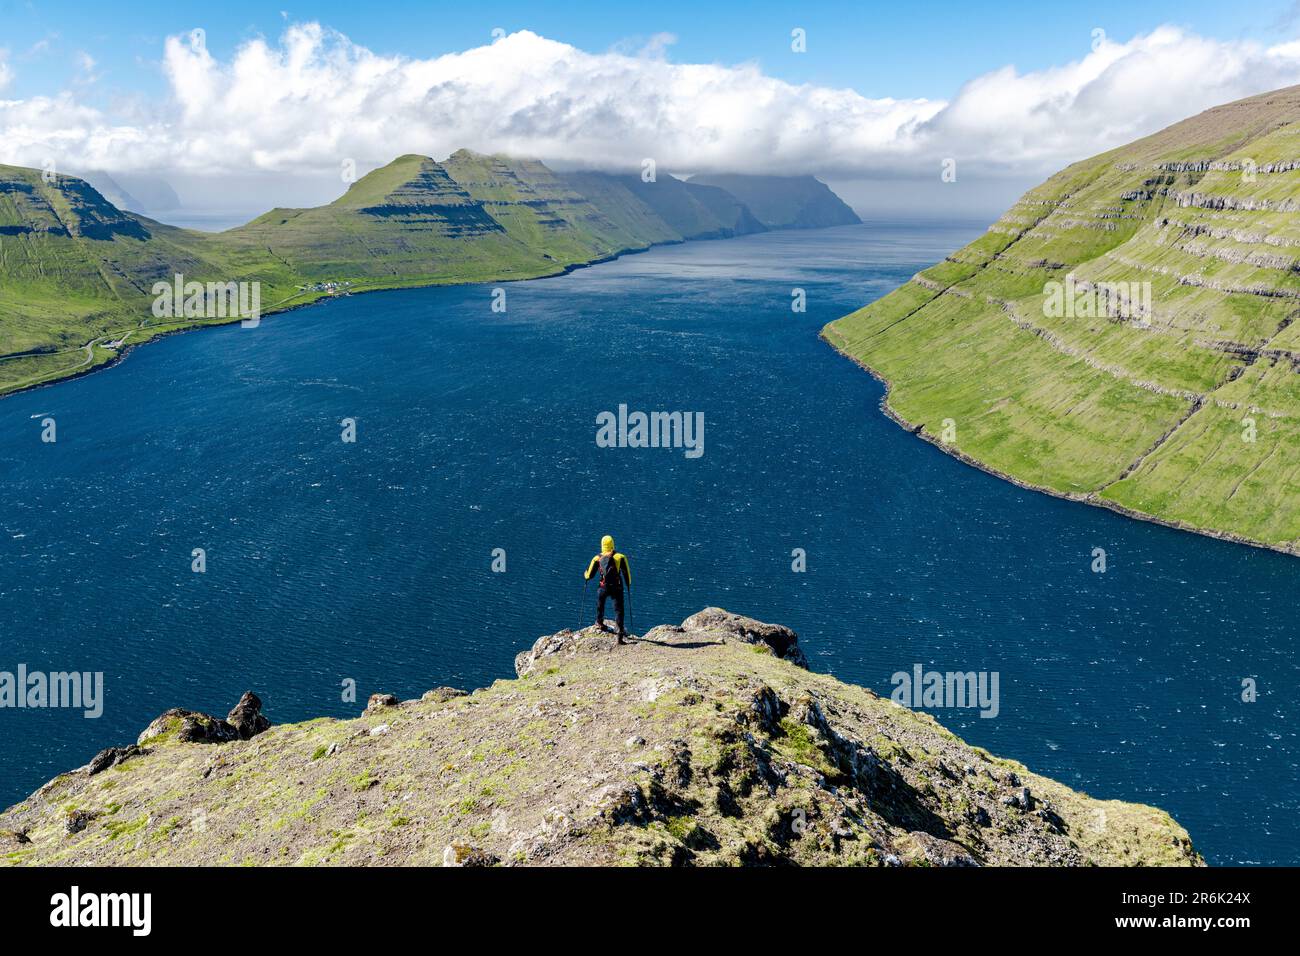 Vue panoramique des randonneurs en admirant les montagnes et l'océan au sommet d'une montagne, Klaksvik, Bordoy Island, Faroe Islands, Danemark, Europe Banque D'Images